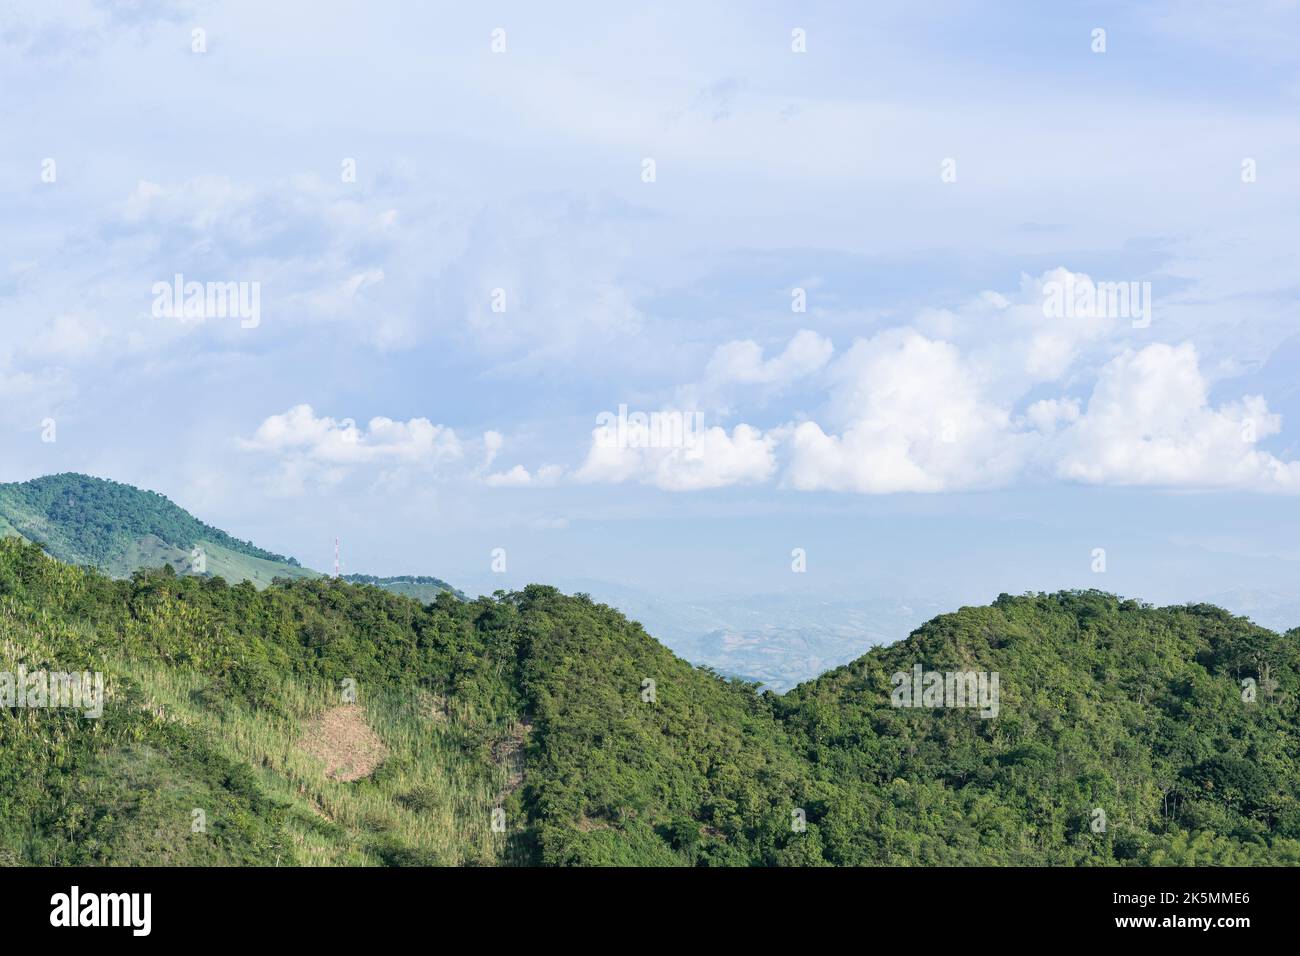 Schöne kolumbianische Berglandschaft, in einer ländlichen Gegend der Gemeinde Quinchia-Risaralda, Kolumbien. Spitze einer sehr Dschungel-ähnlichen Bergkette. H Stockfoto